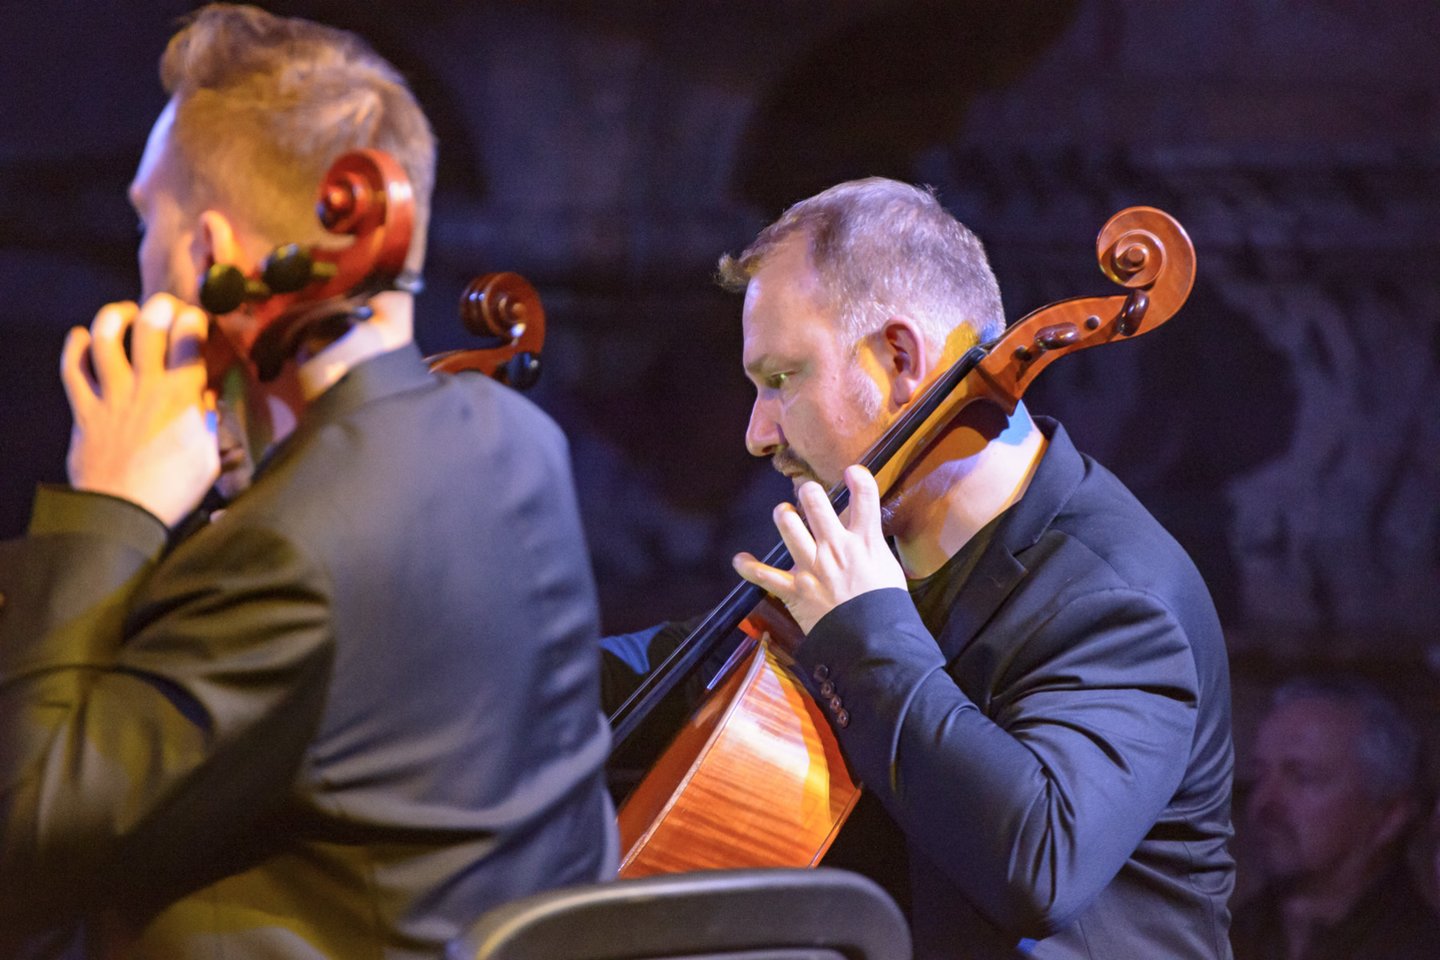 Spalio 27-osios vakarą šv. Kotrynos bažnyčioje susirinkusiems šiuolaikinės muzikos gerbėjams buvo padovanota išskirtinė galimybė išgirsti ir pamatyti vienoje scenoje aštuonių violončelių ansamblį, kuris leido pirmą kartą Lietuvoje suskambėti žymaus amerikiečių minimalisto Michea lo Gordono kūriniui „8“.<br>Rengėjų nuotr. 